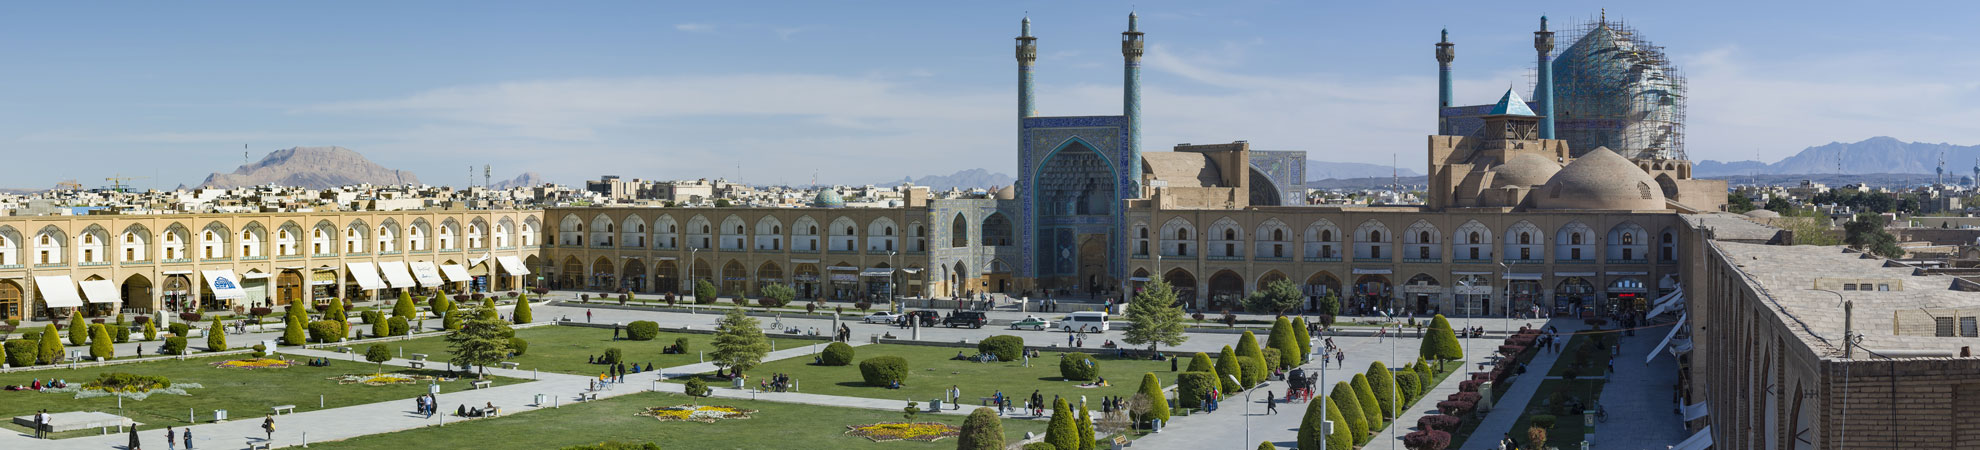 Iran tourisme danger